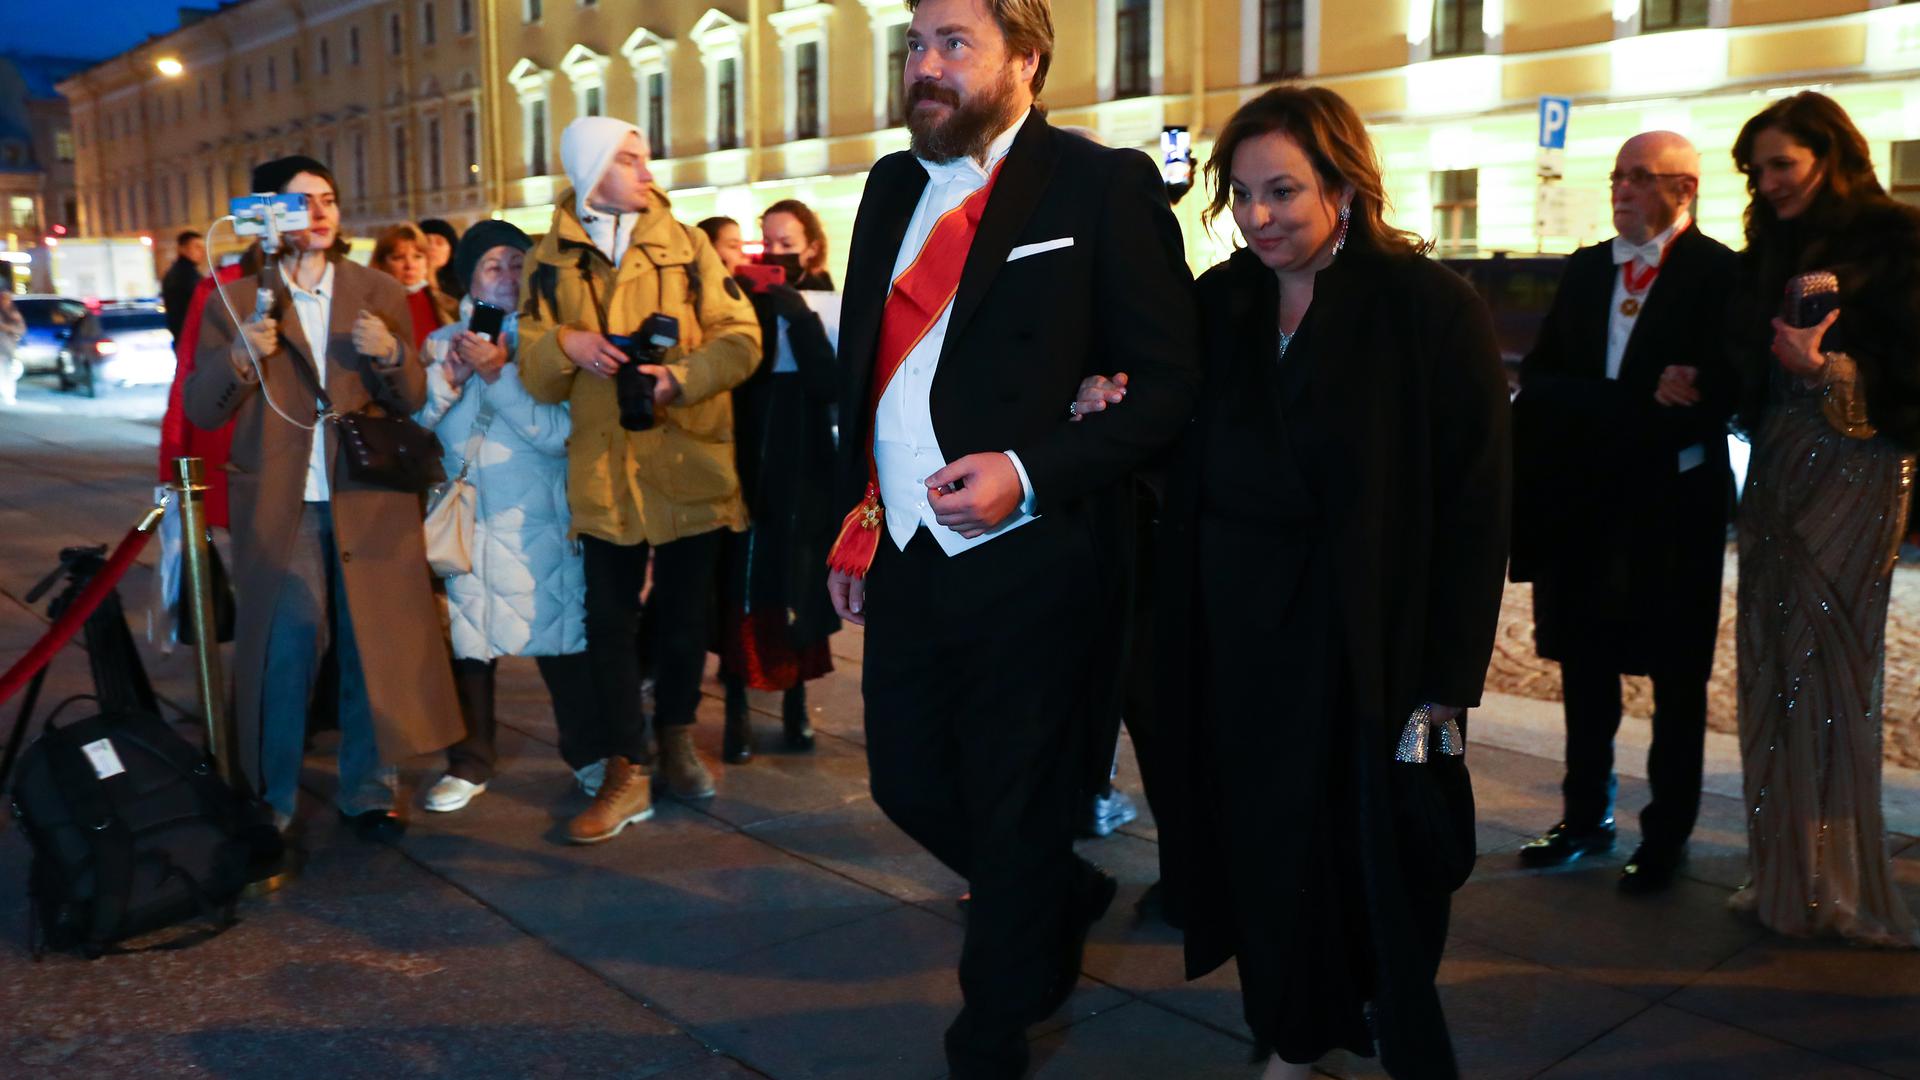 Konstantin Malofeyev com a sua esposa Irina Vilter a caminho da celebração do casamento em São Petersburgo.